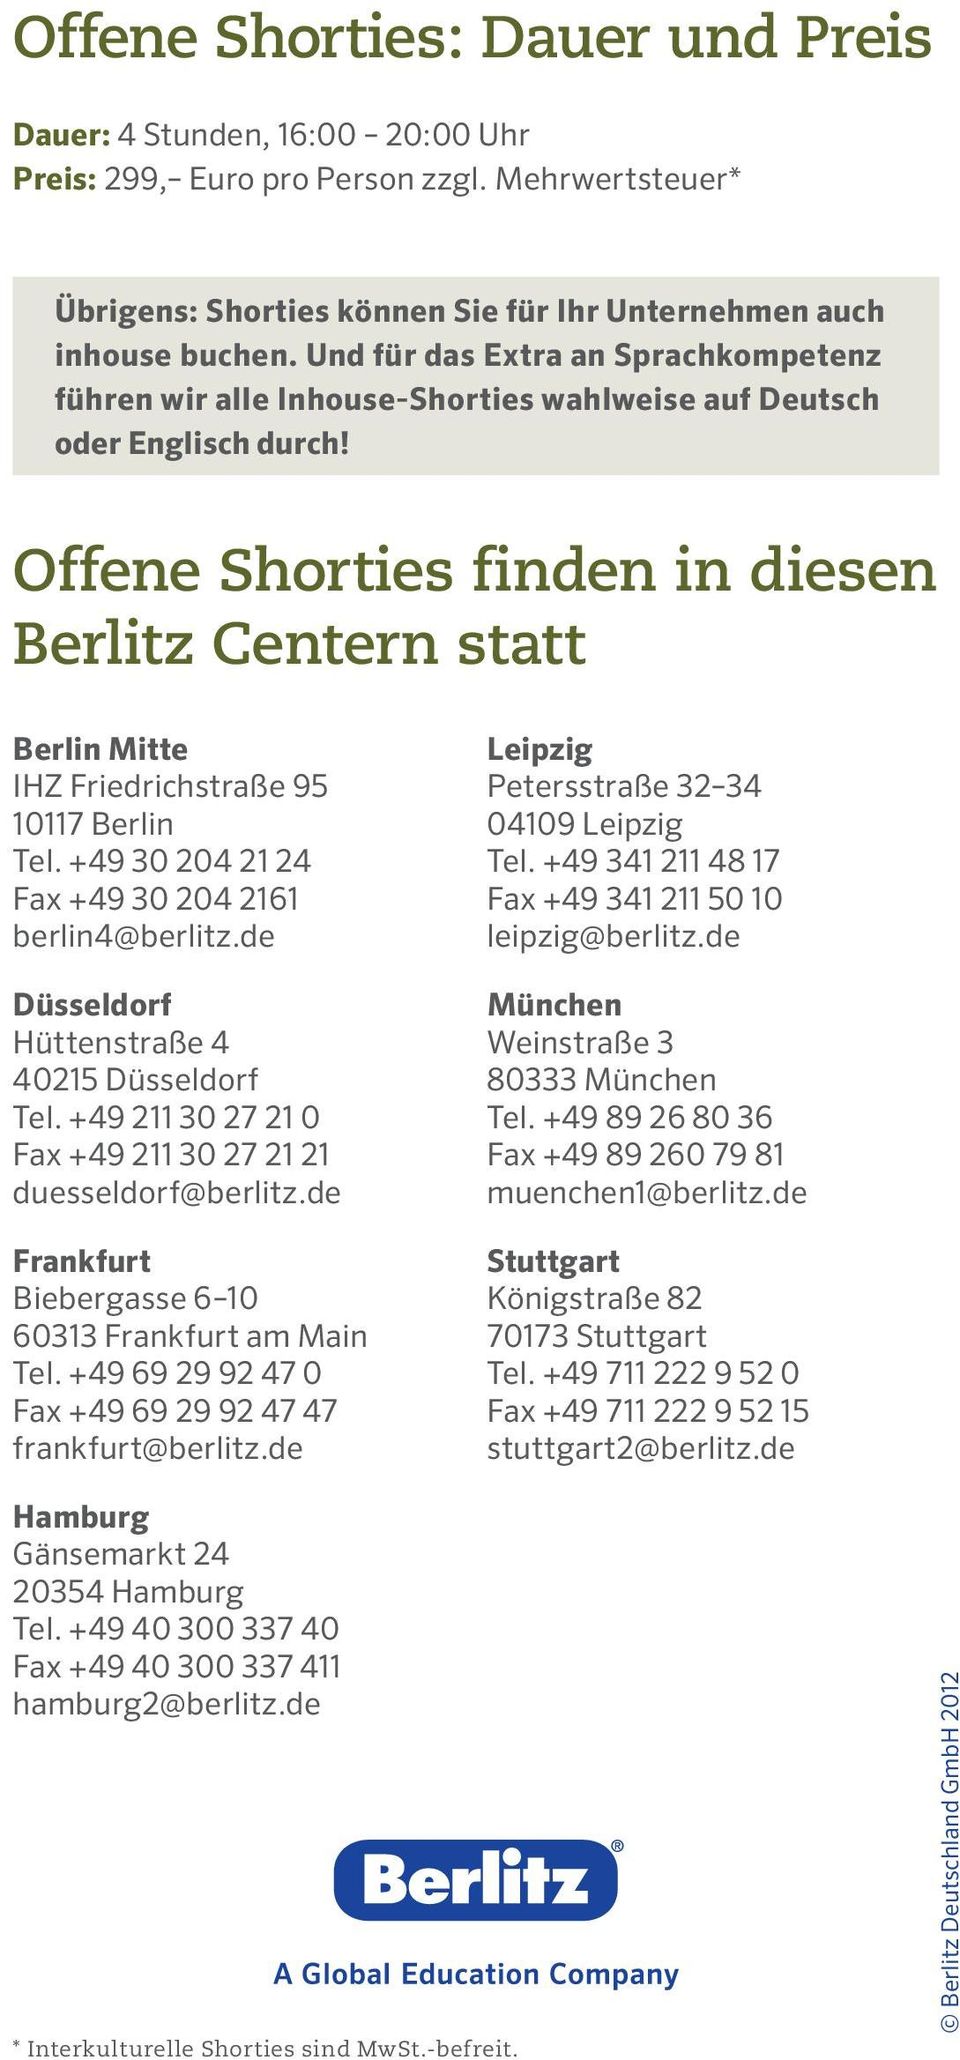 Offene Shorties finden in diesen Berlitz Centern statt Berlin Mitte IHZ Friedrichstraße 95 10117 Berlin Tel. +49 30 204 21 24 Fax +49 30 204 2161 berlin4@berlitz.